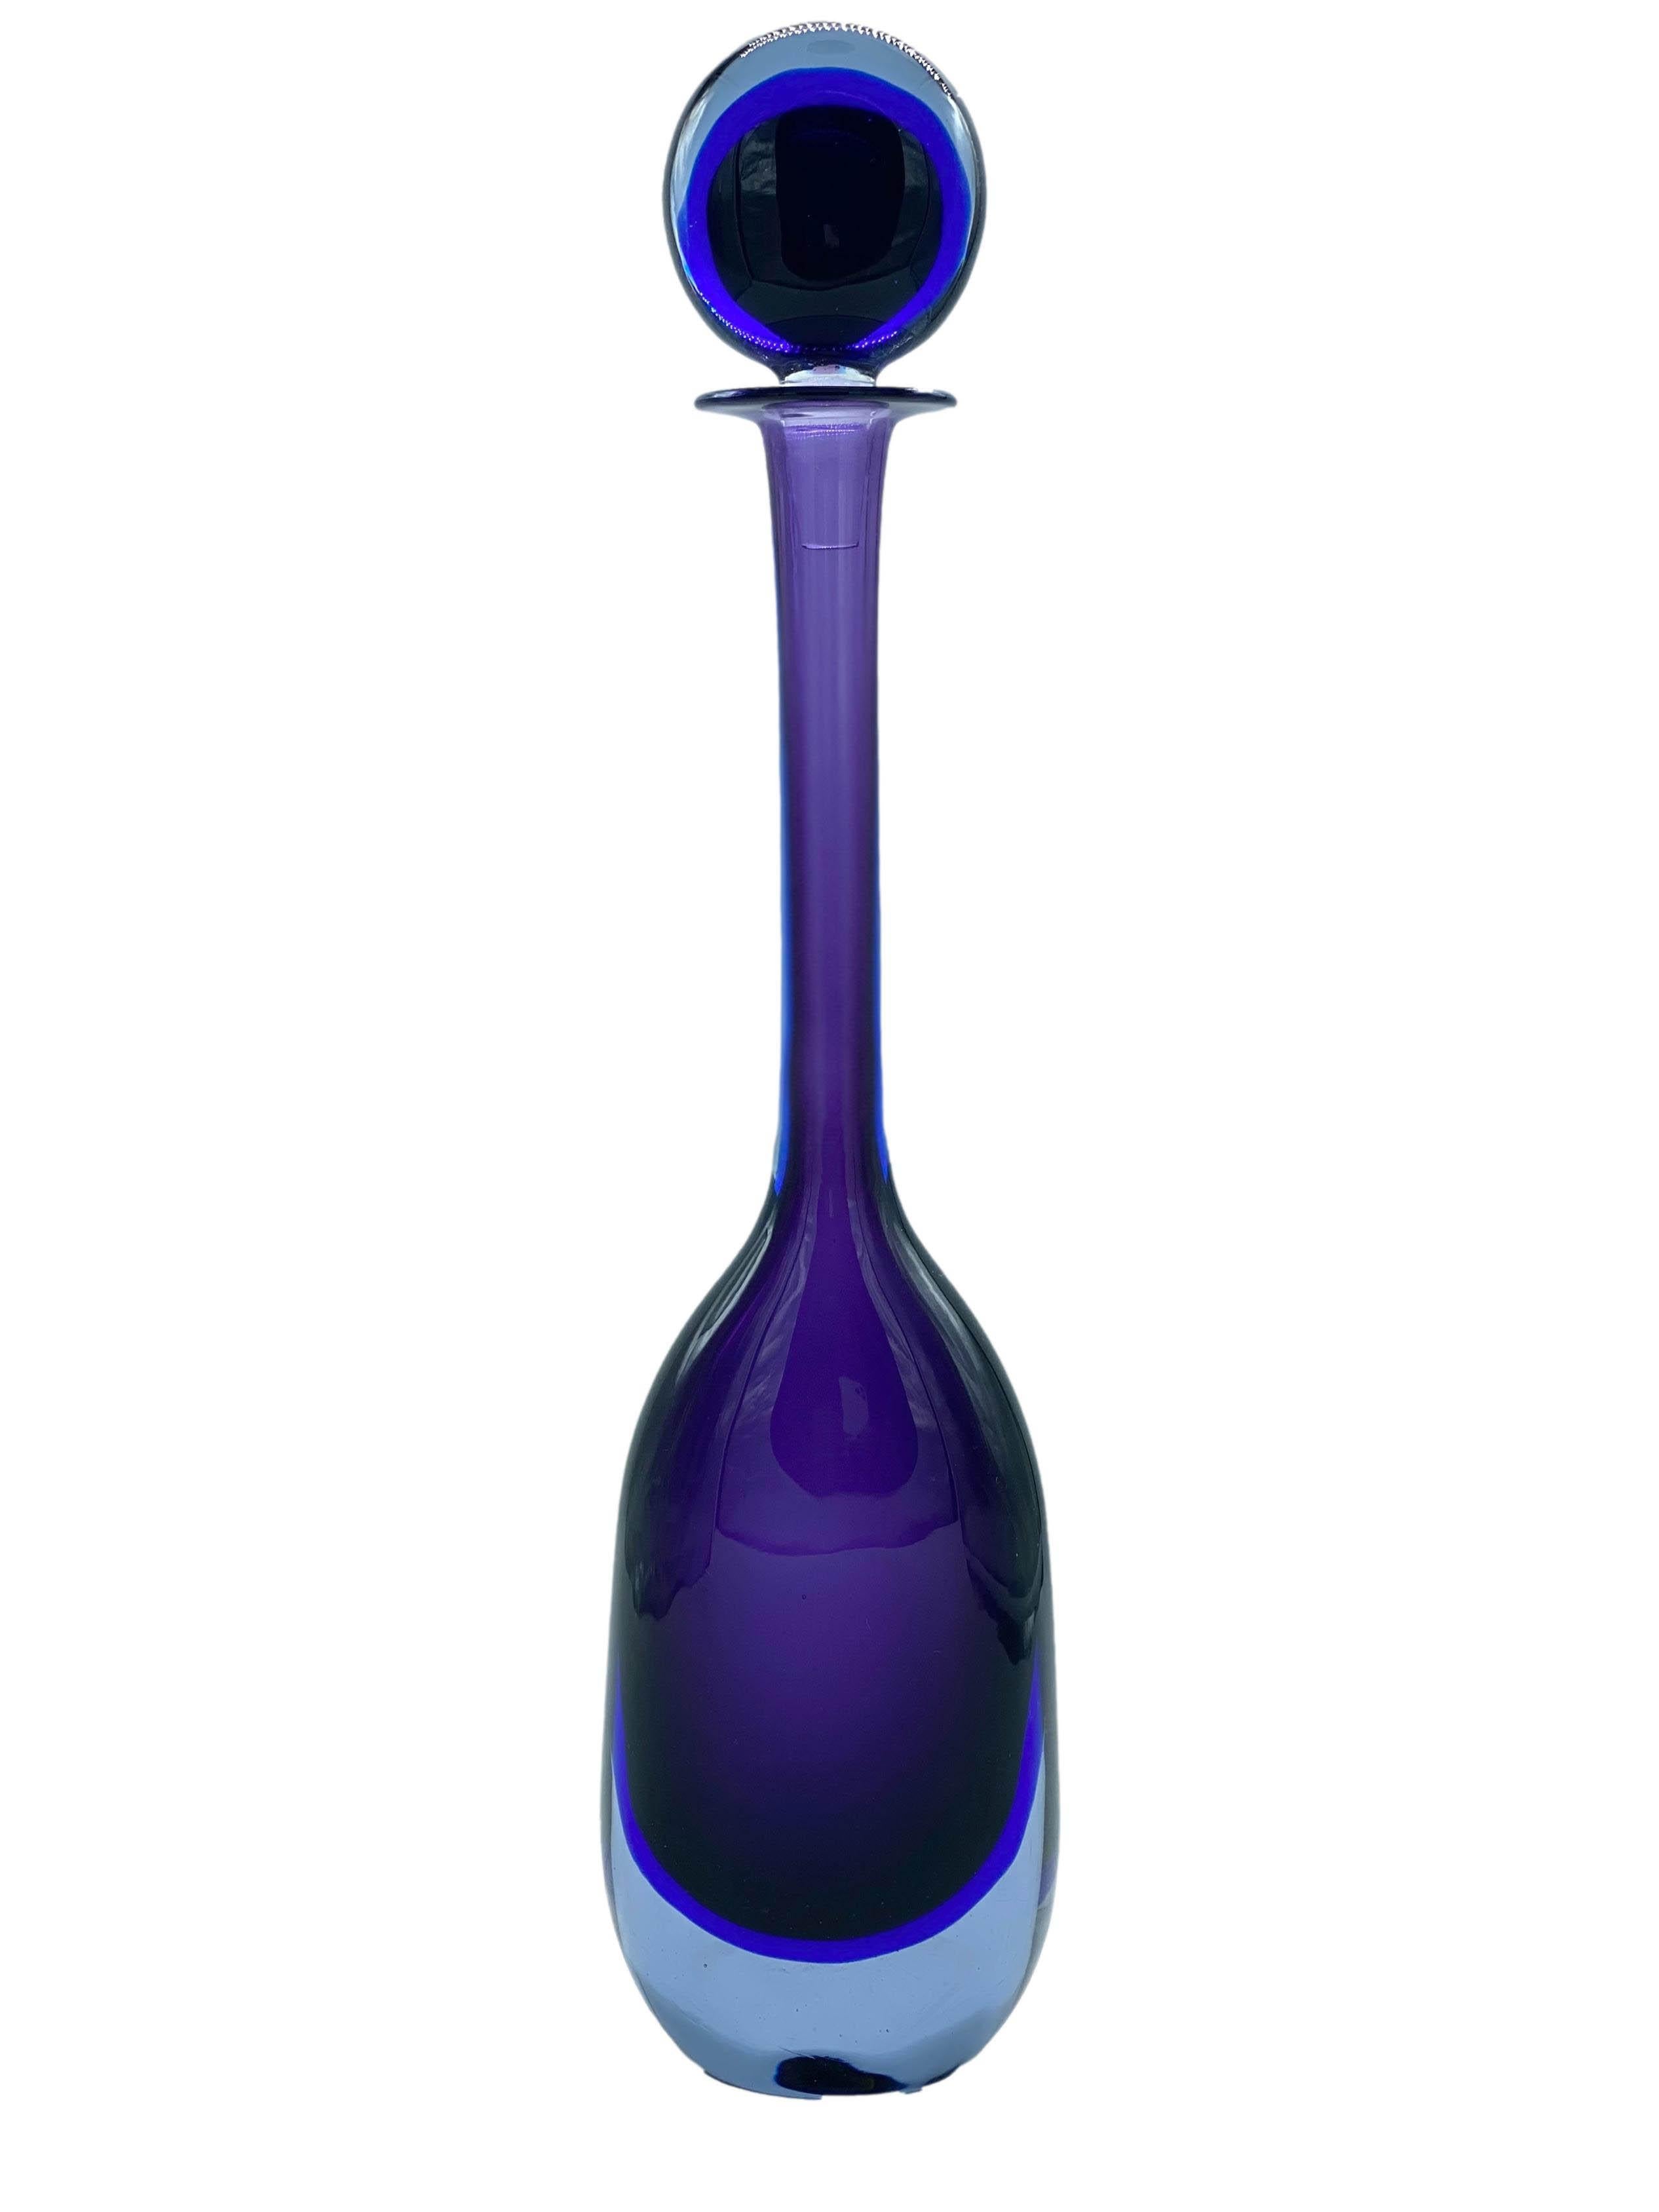 Italian Flavio Poli for Seguso Purple Murano Glass Bottle, Italy 1950s